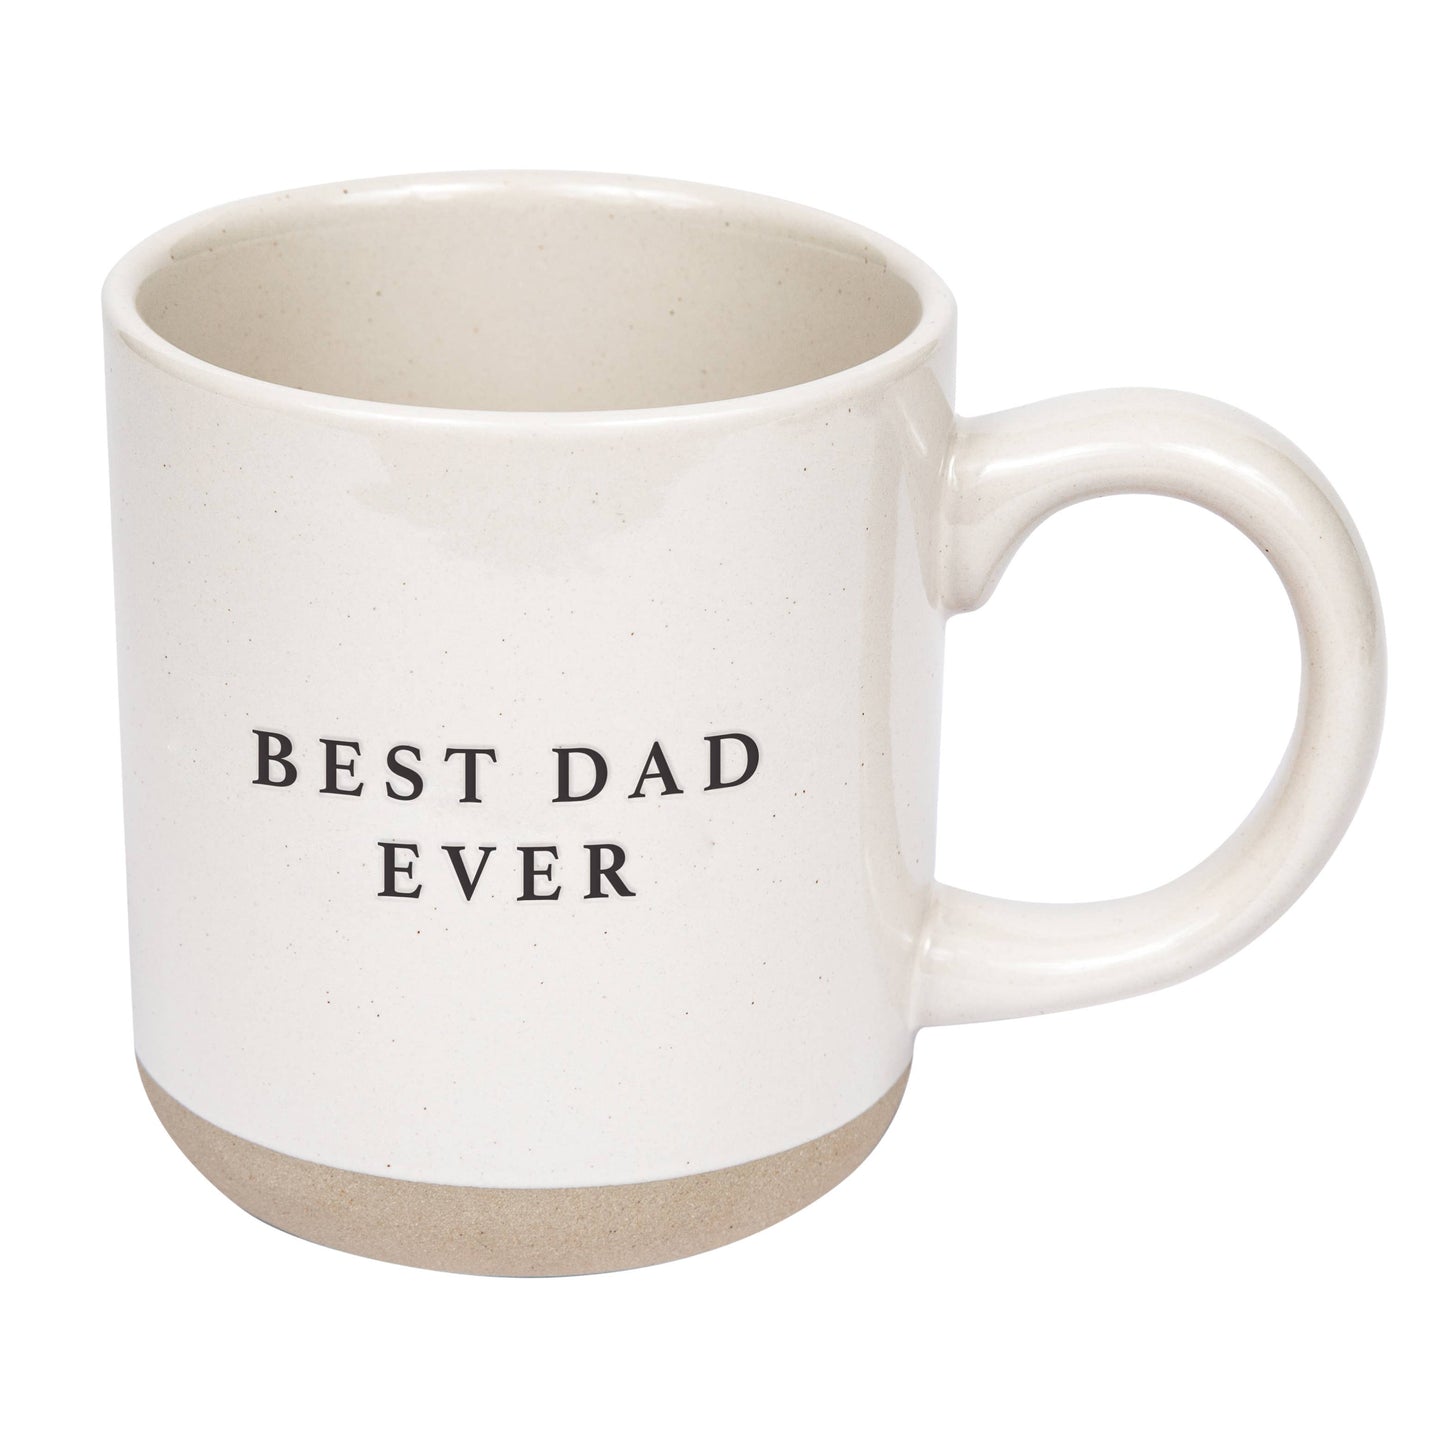 Best Dad Ever - Coffee Mug